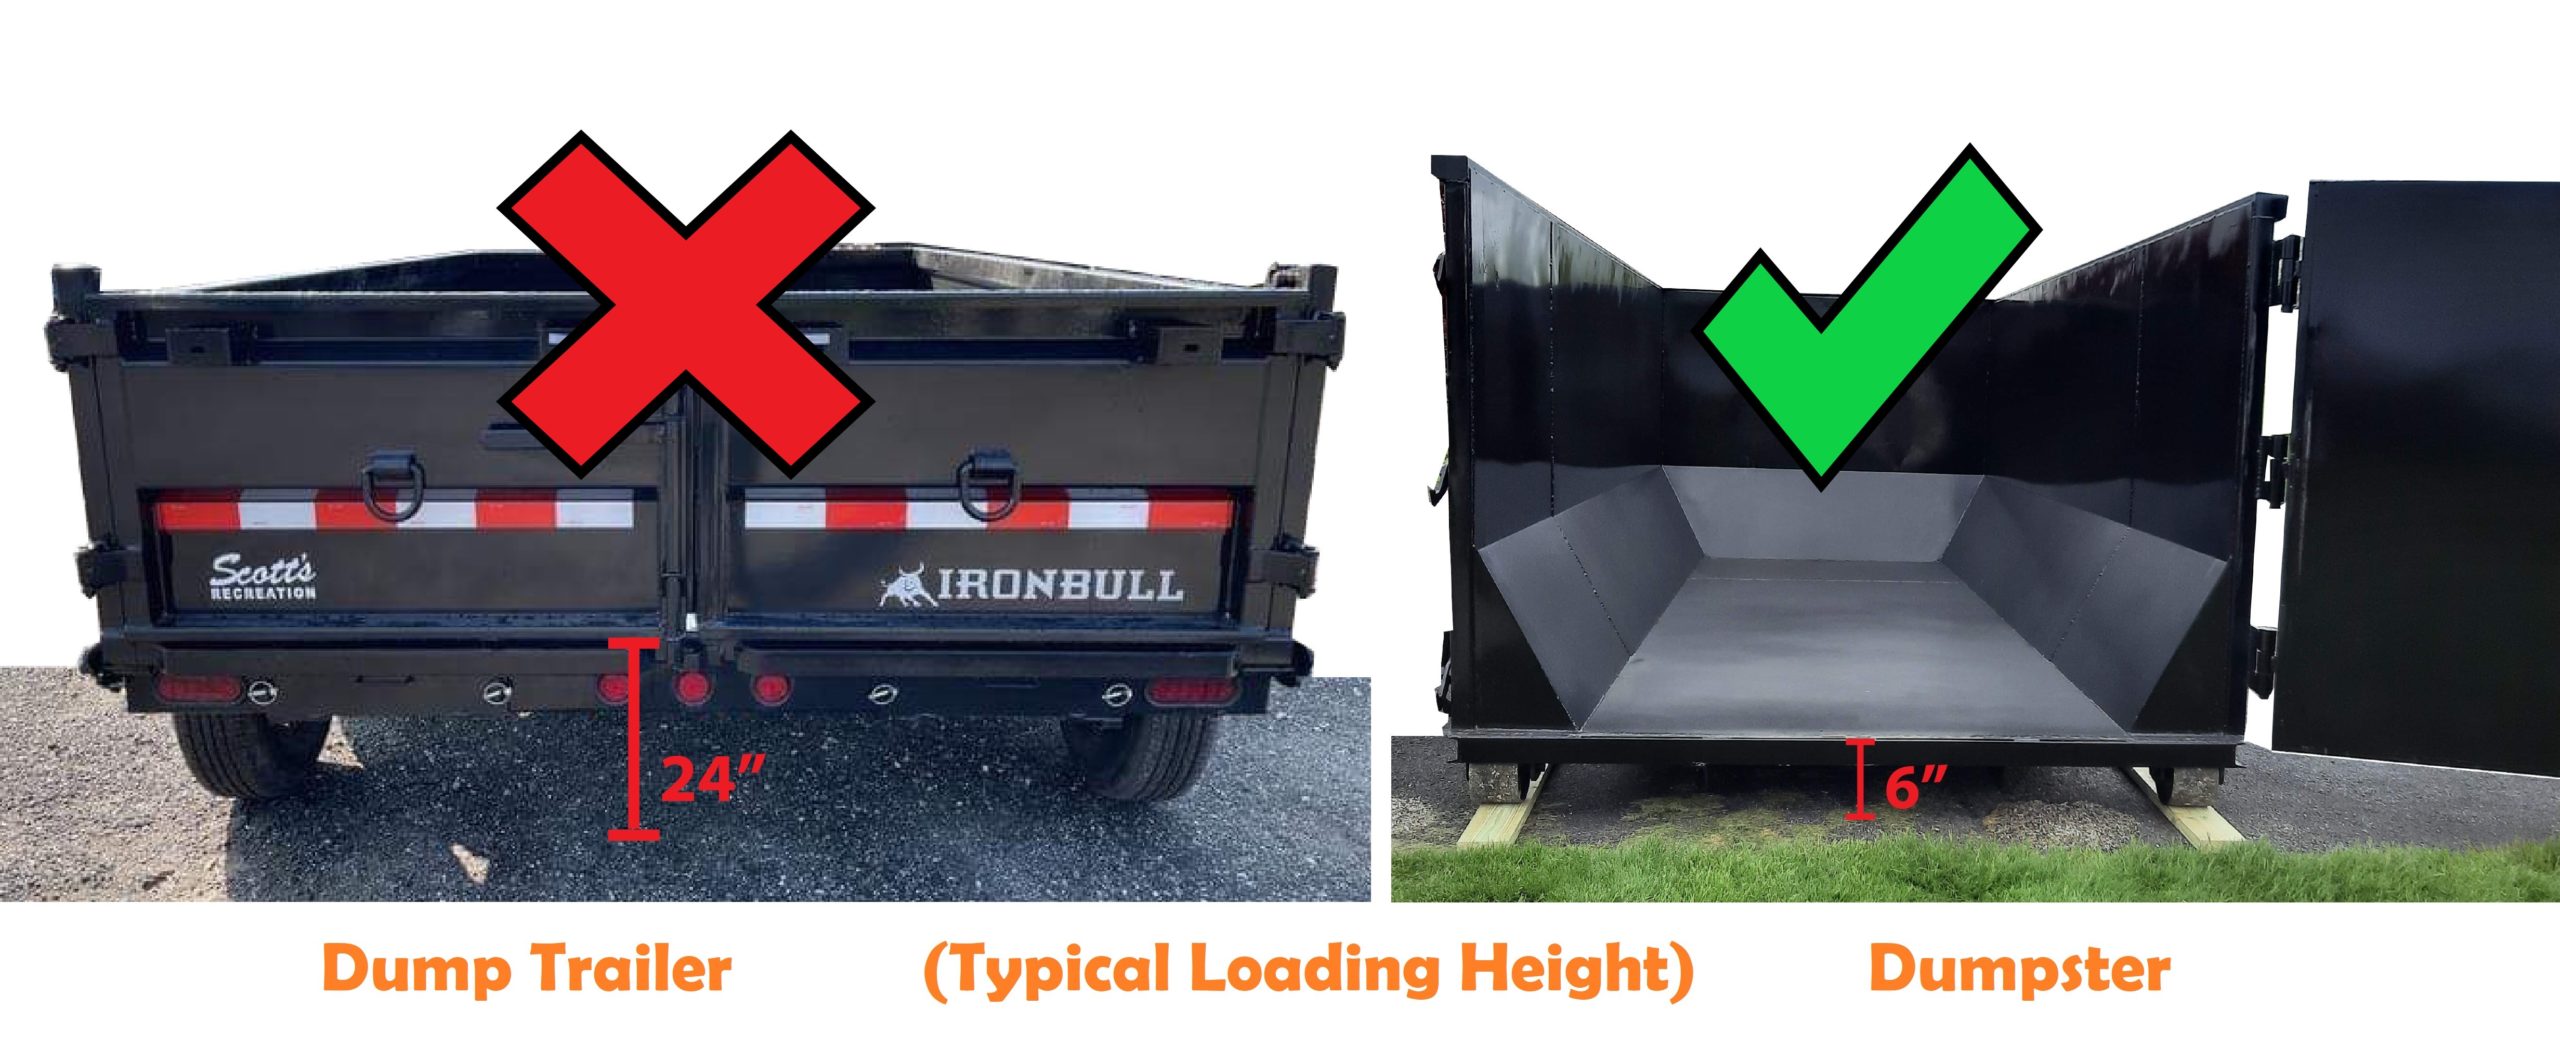 20 yard dumpster rental vs trailer rental back 2